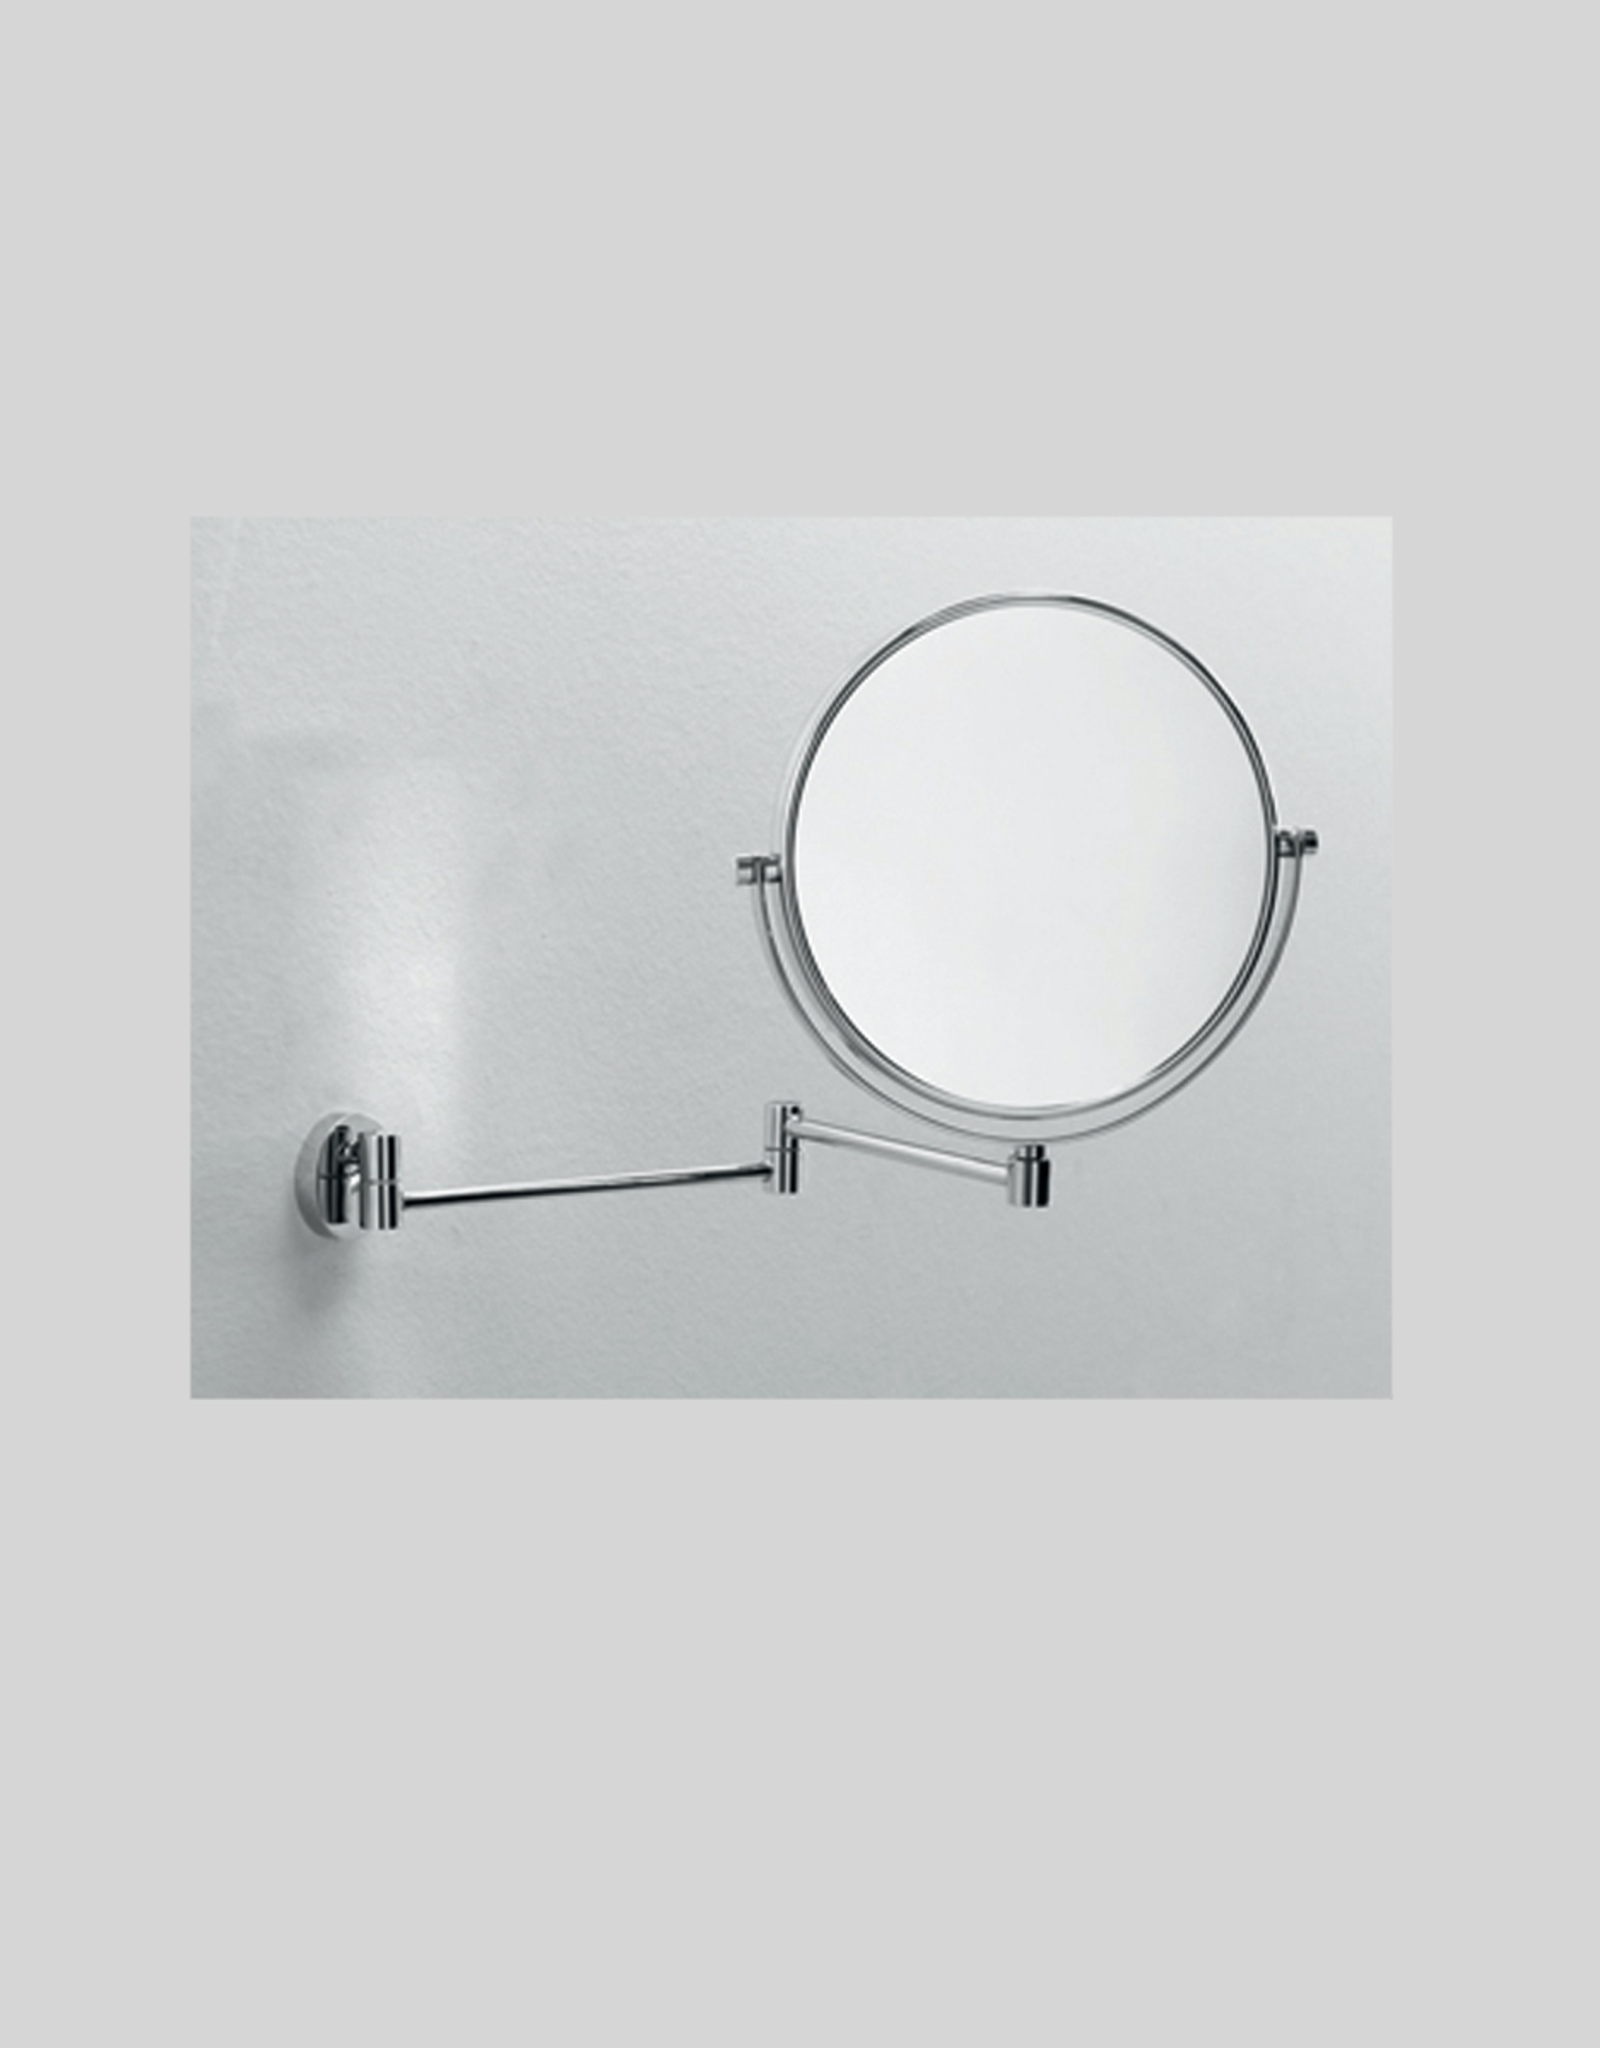 Mevedo miroir grossissant (3x) avec bras mural flexible - vente